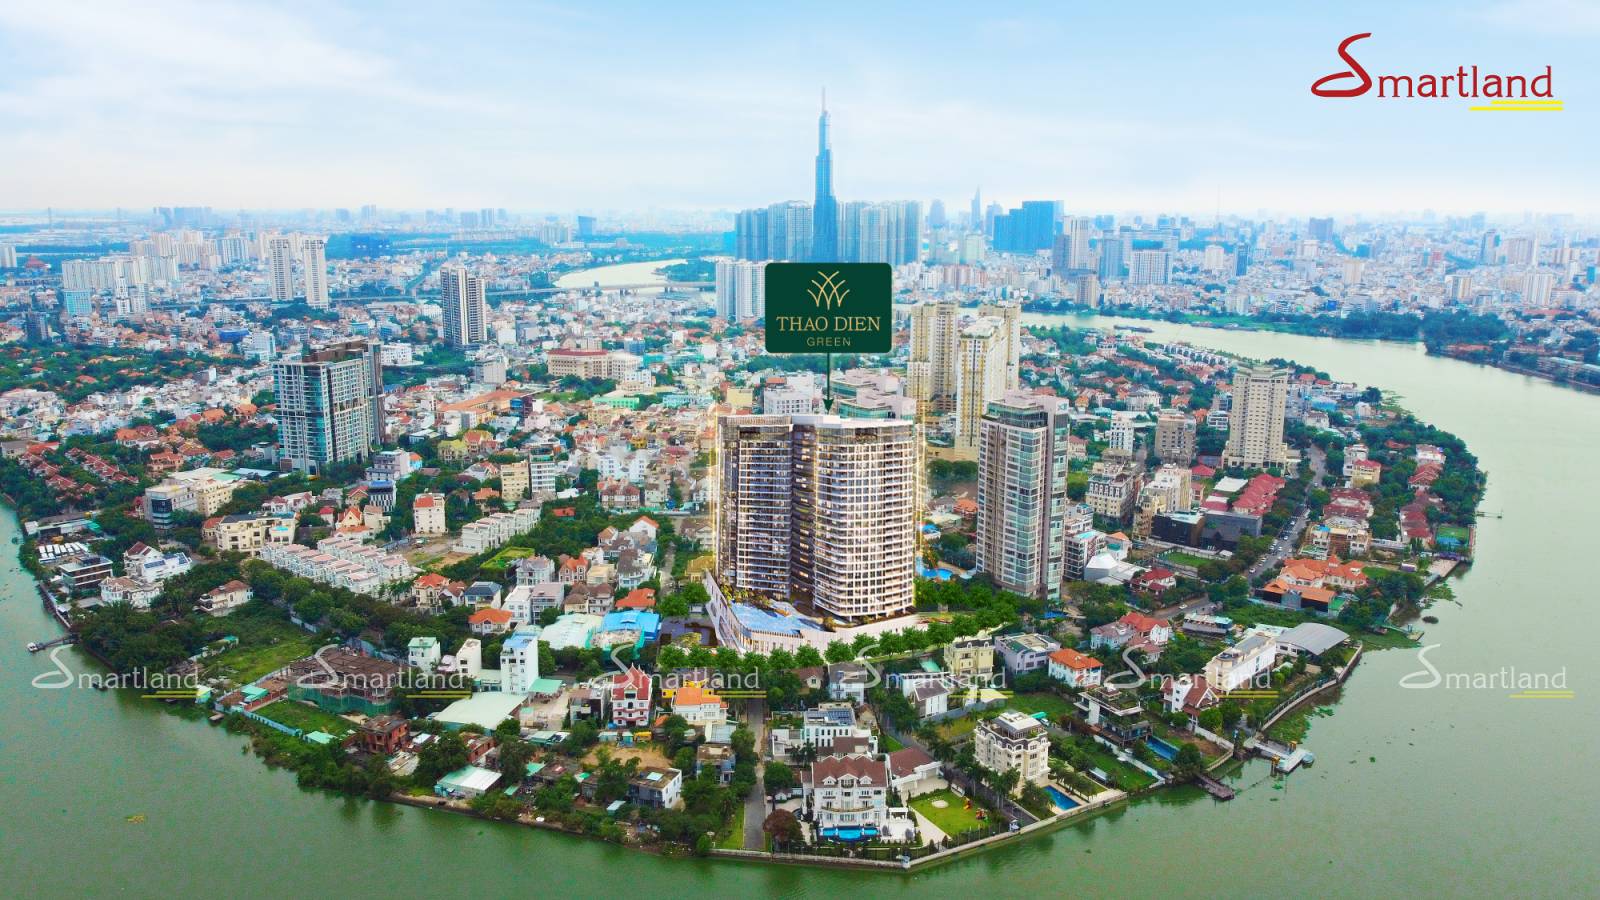 Vị trí dự án mới nhất tại Thảo Điền năm 2021  - Thảo Điền Green